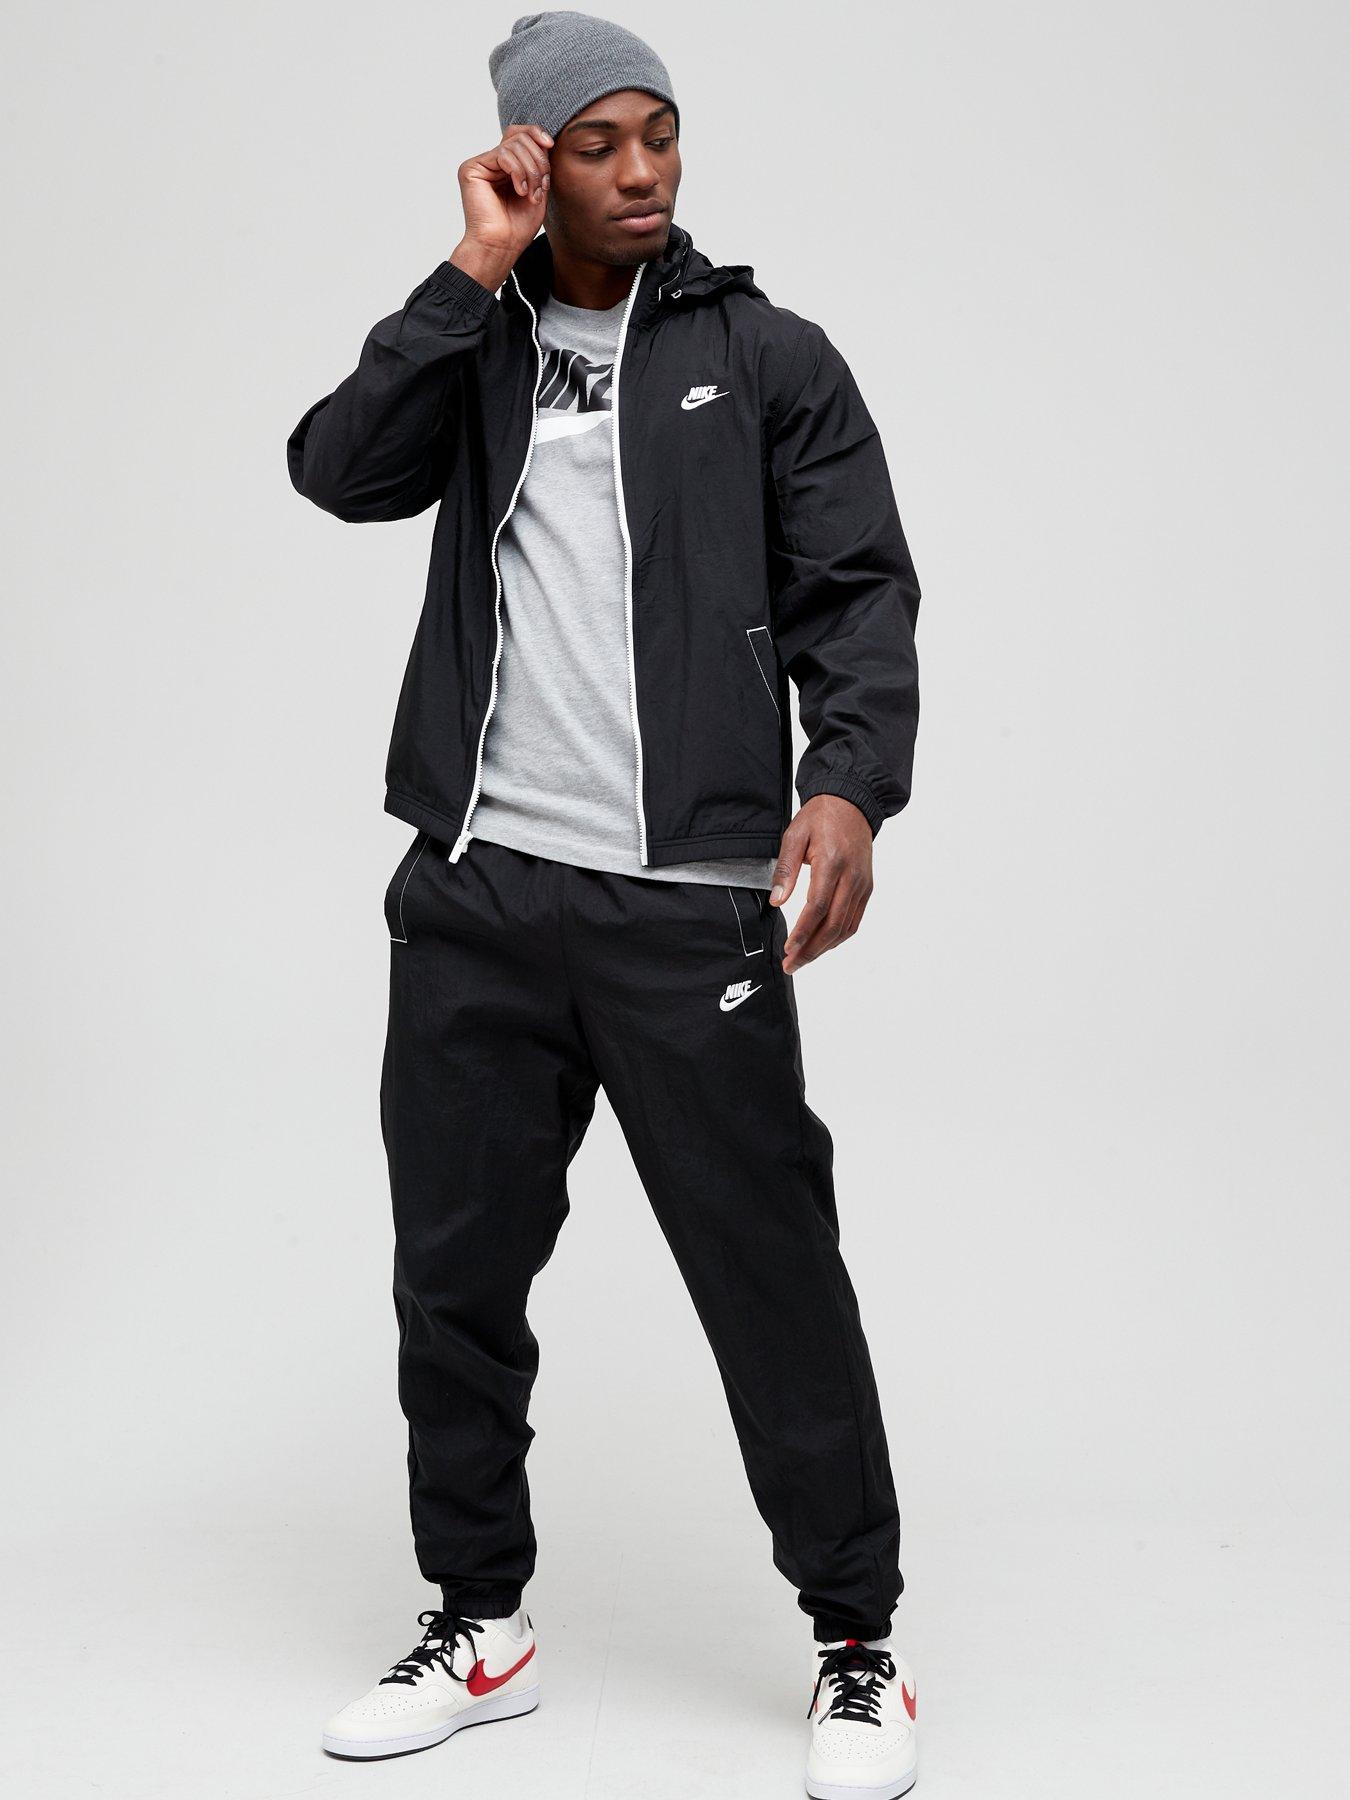 overzien eeuw Voorstad Nike NSW Woven Tracksuit - Black/White | littlewoods.com